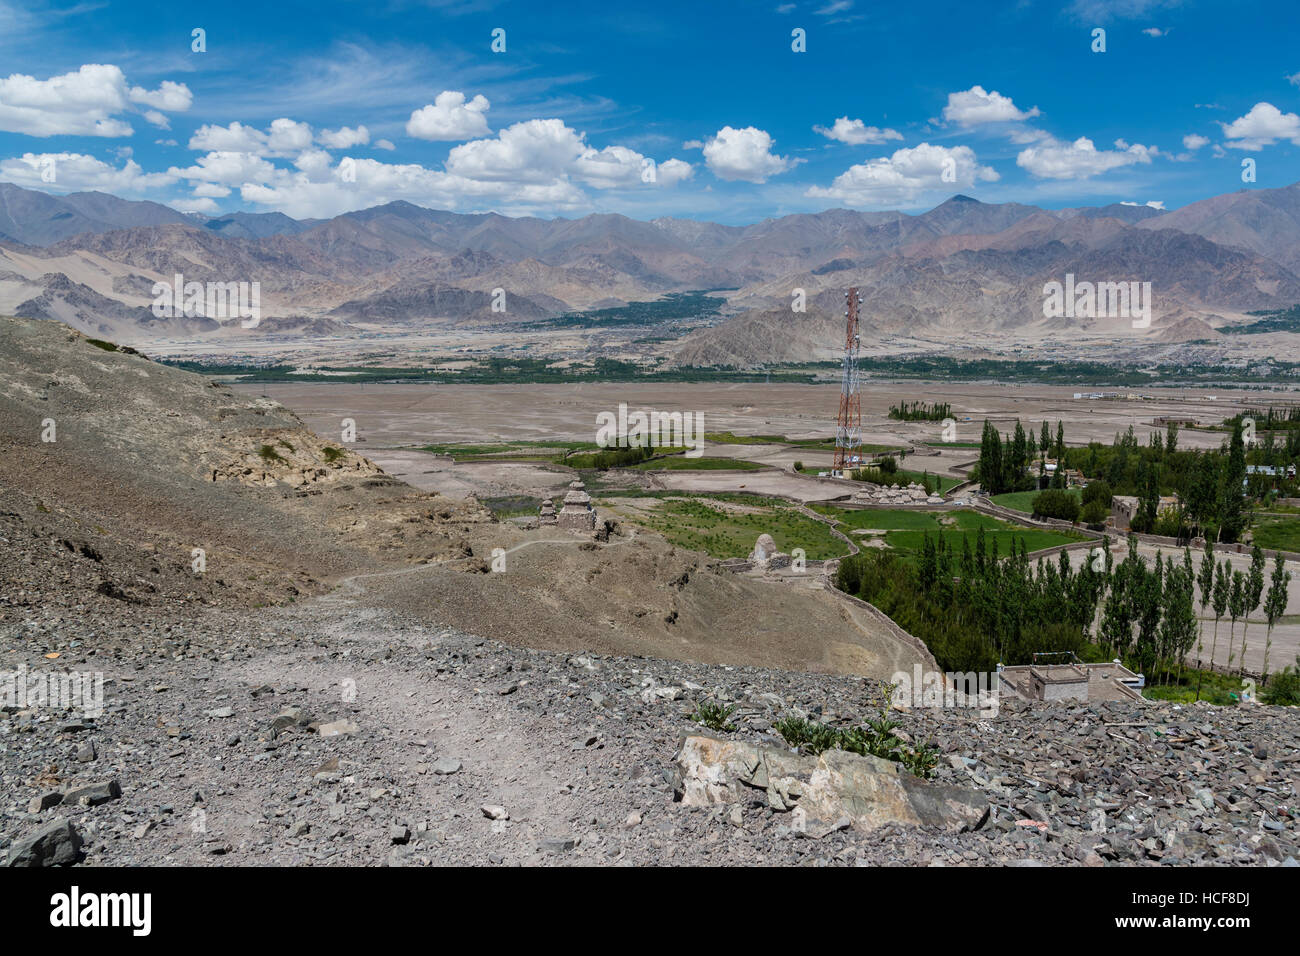 Paesaggi del Ladakh che mostra l'insediamento umano e montagna himalayana in background Foto Stock